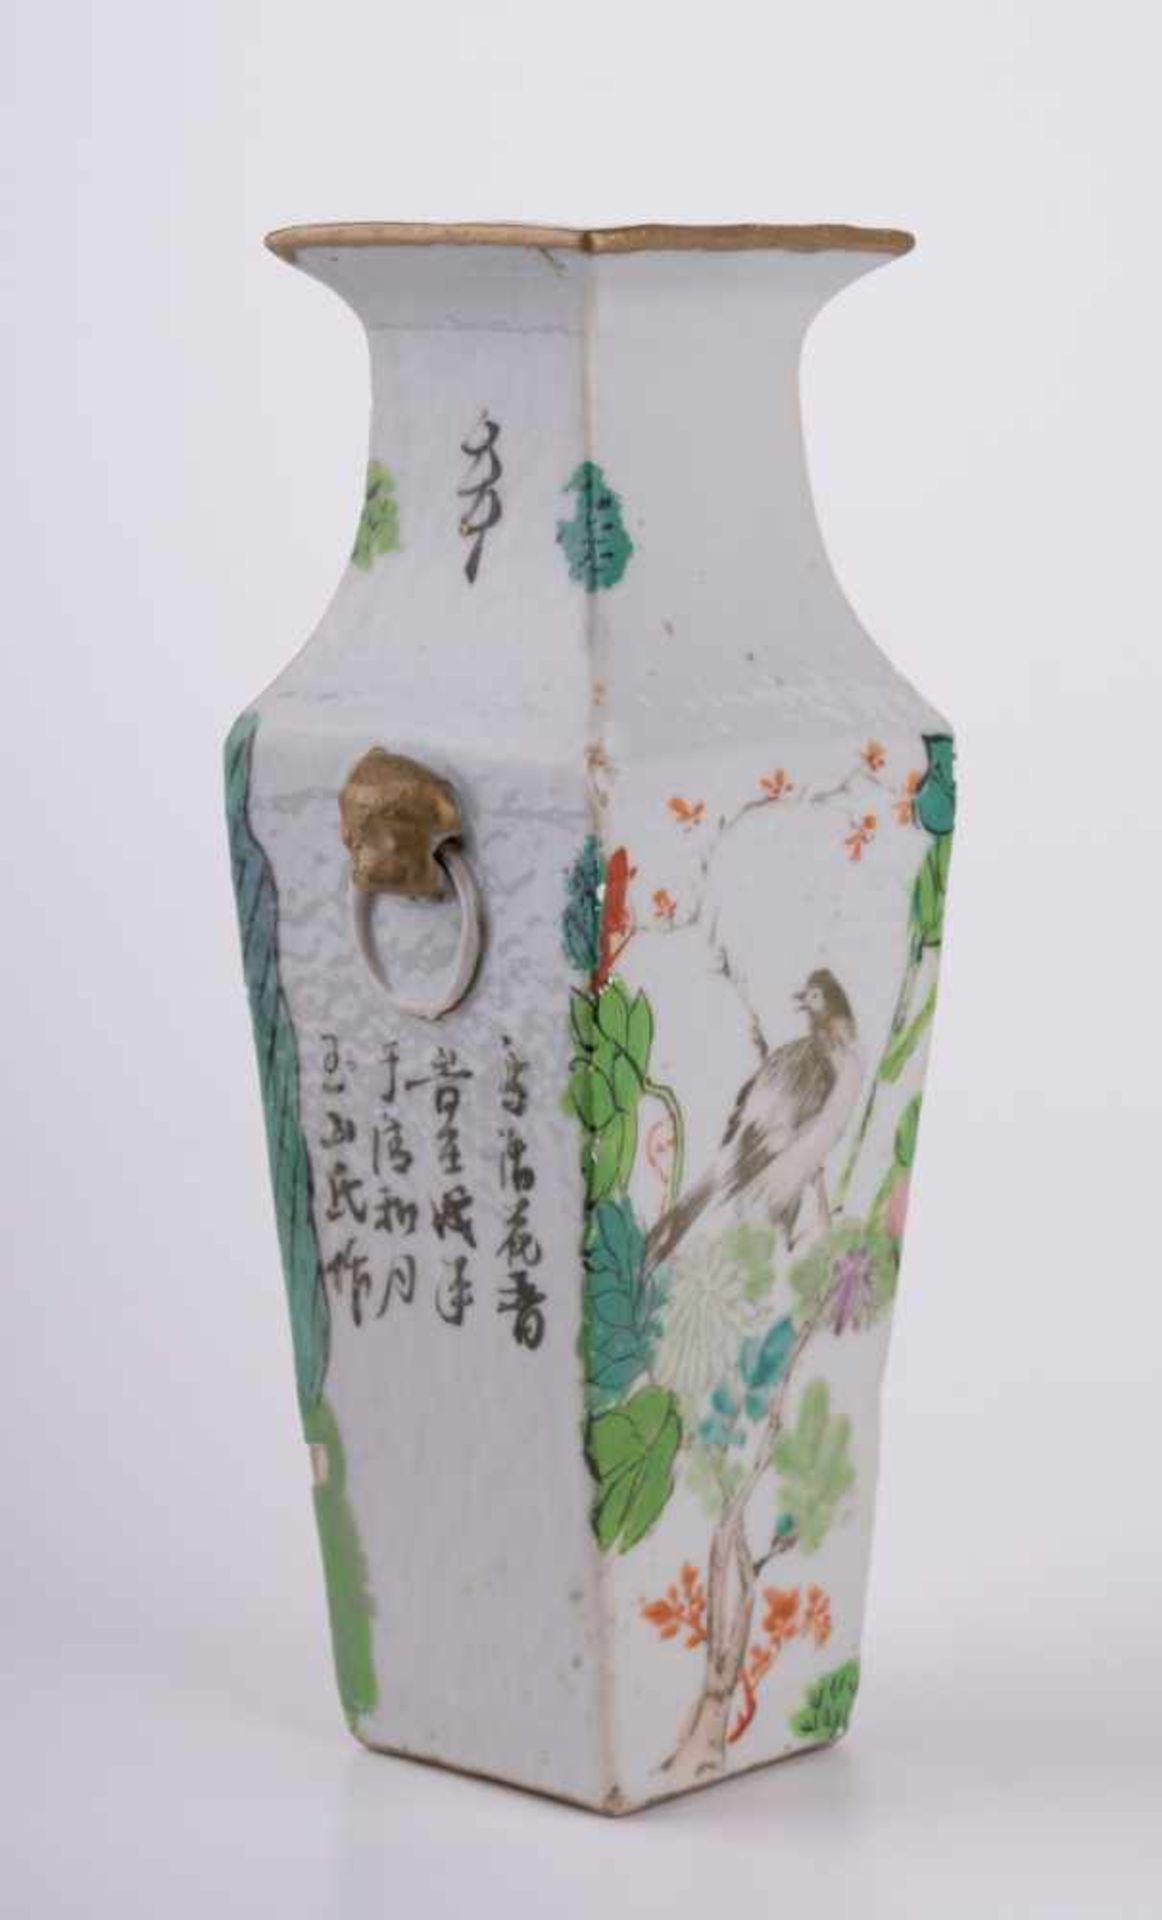 Vase China 19./20. Jhd. bemallt mit Landschafts - und Vogeldekor sowie mit Schriftzeichen, an den